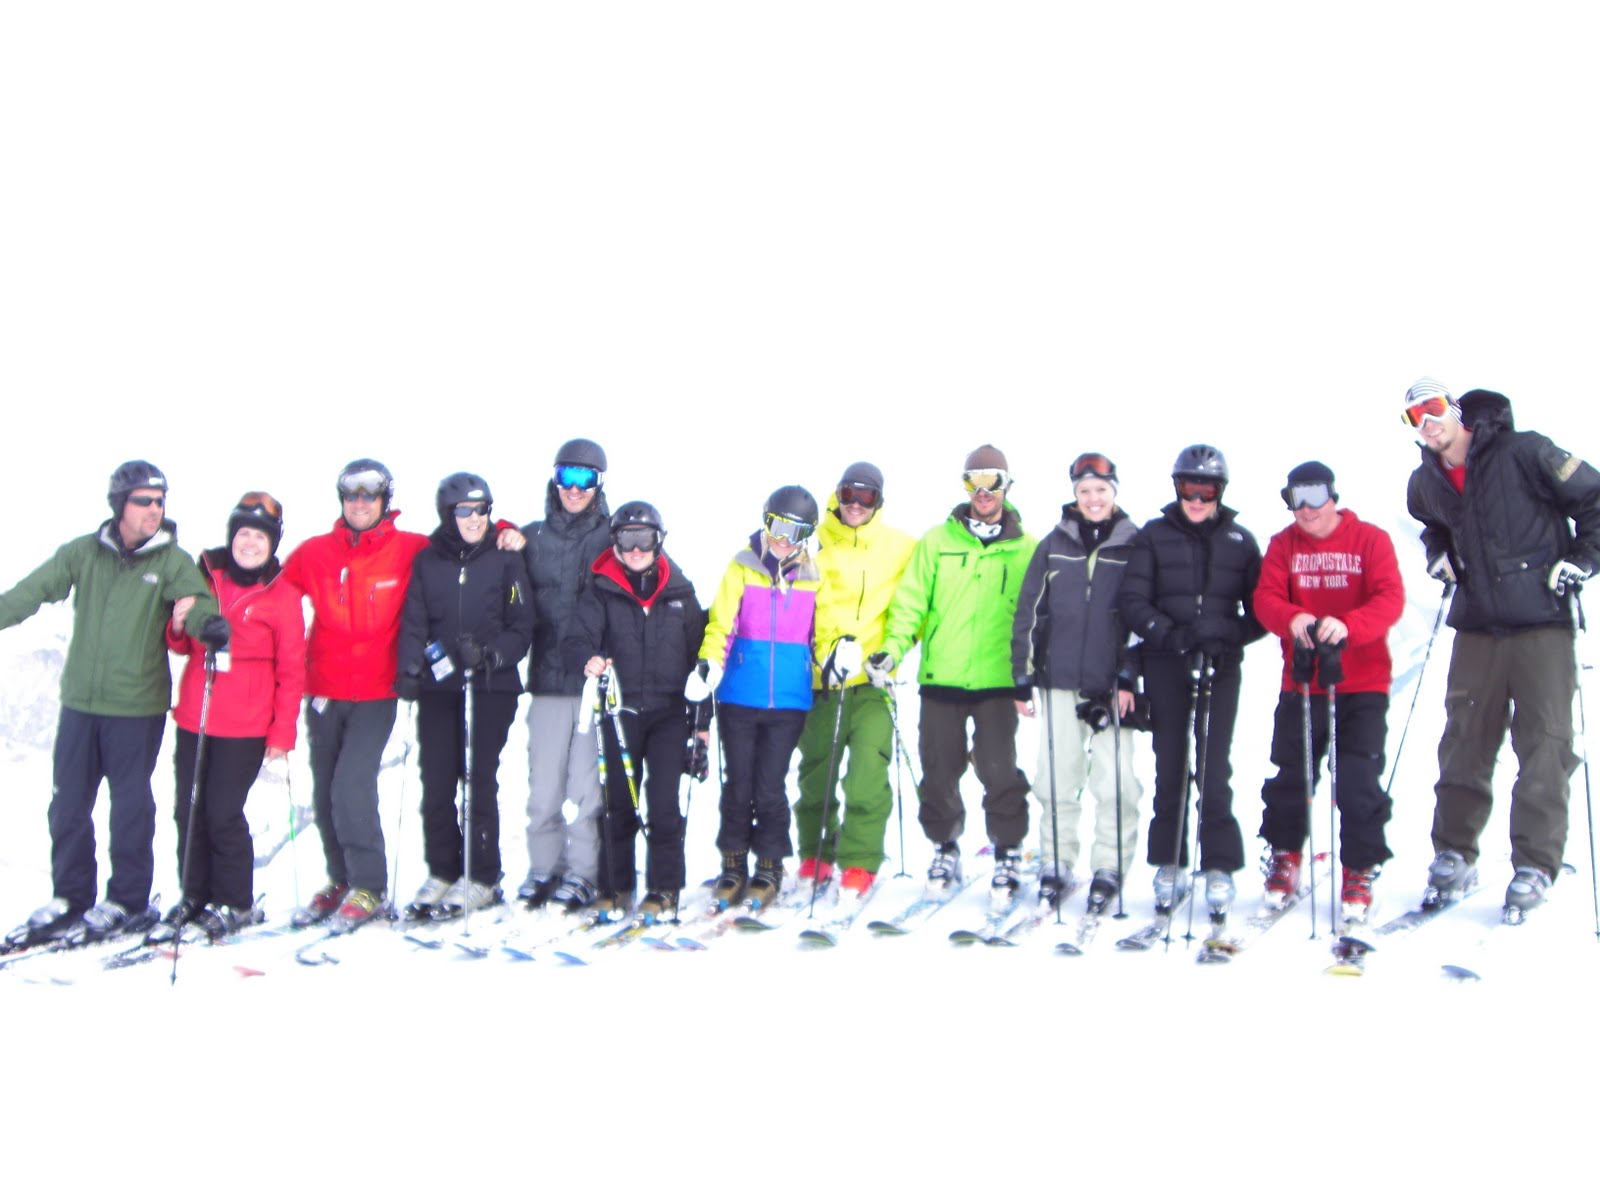 [karlito+ski+day+018.JPG]